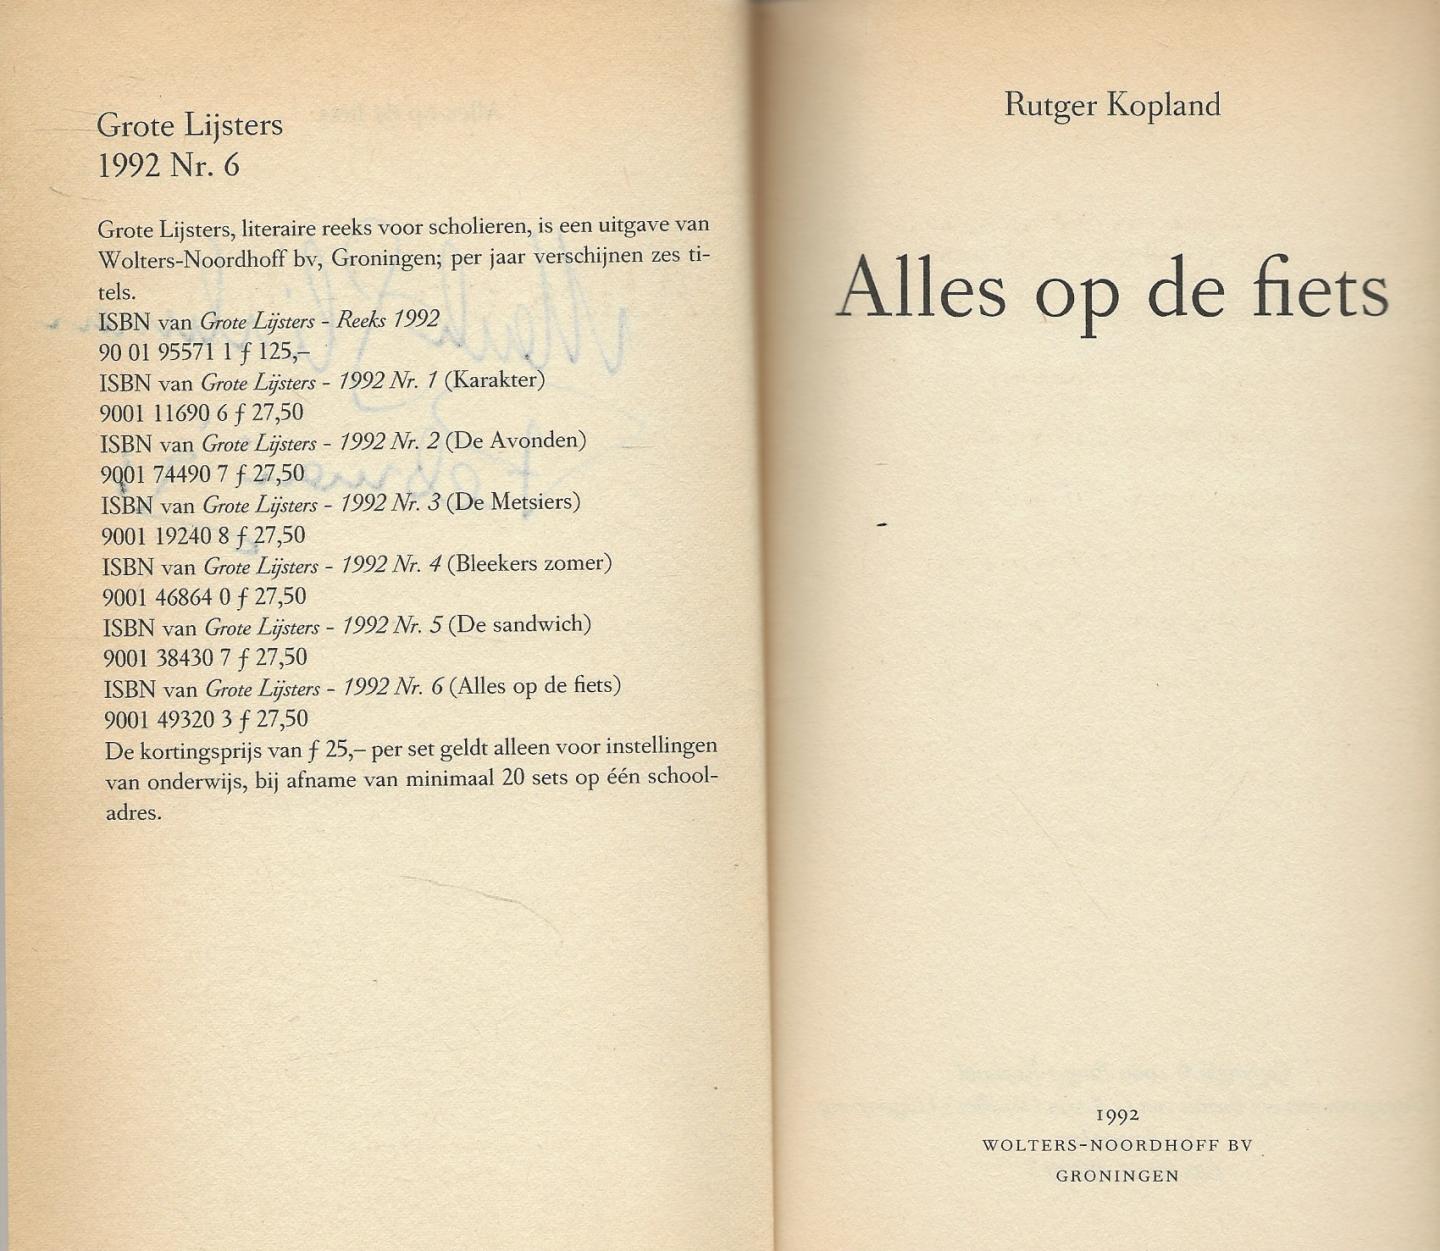 Kopland, pseudoniem van Rutger (Rudi) P. Hendrik van den Hoofdakker, (Goor, 4 augustus 1934 - Glimmen, 11 juli 2012), Rutger - Alles op de Fiets